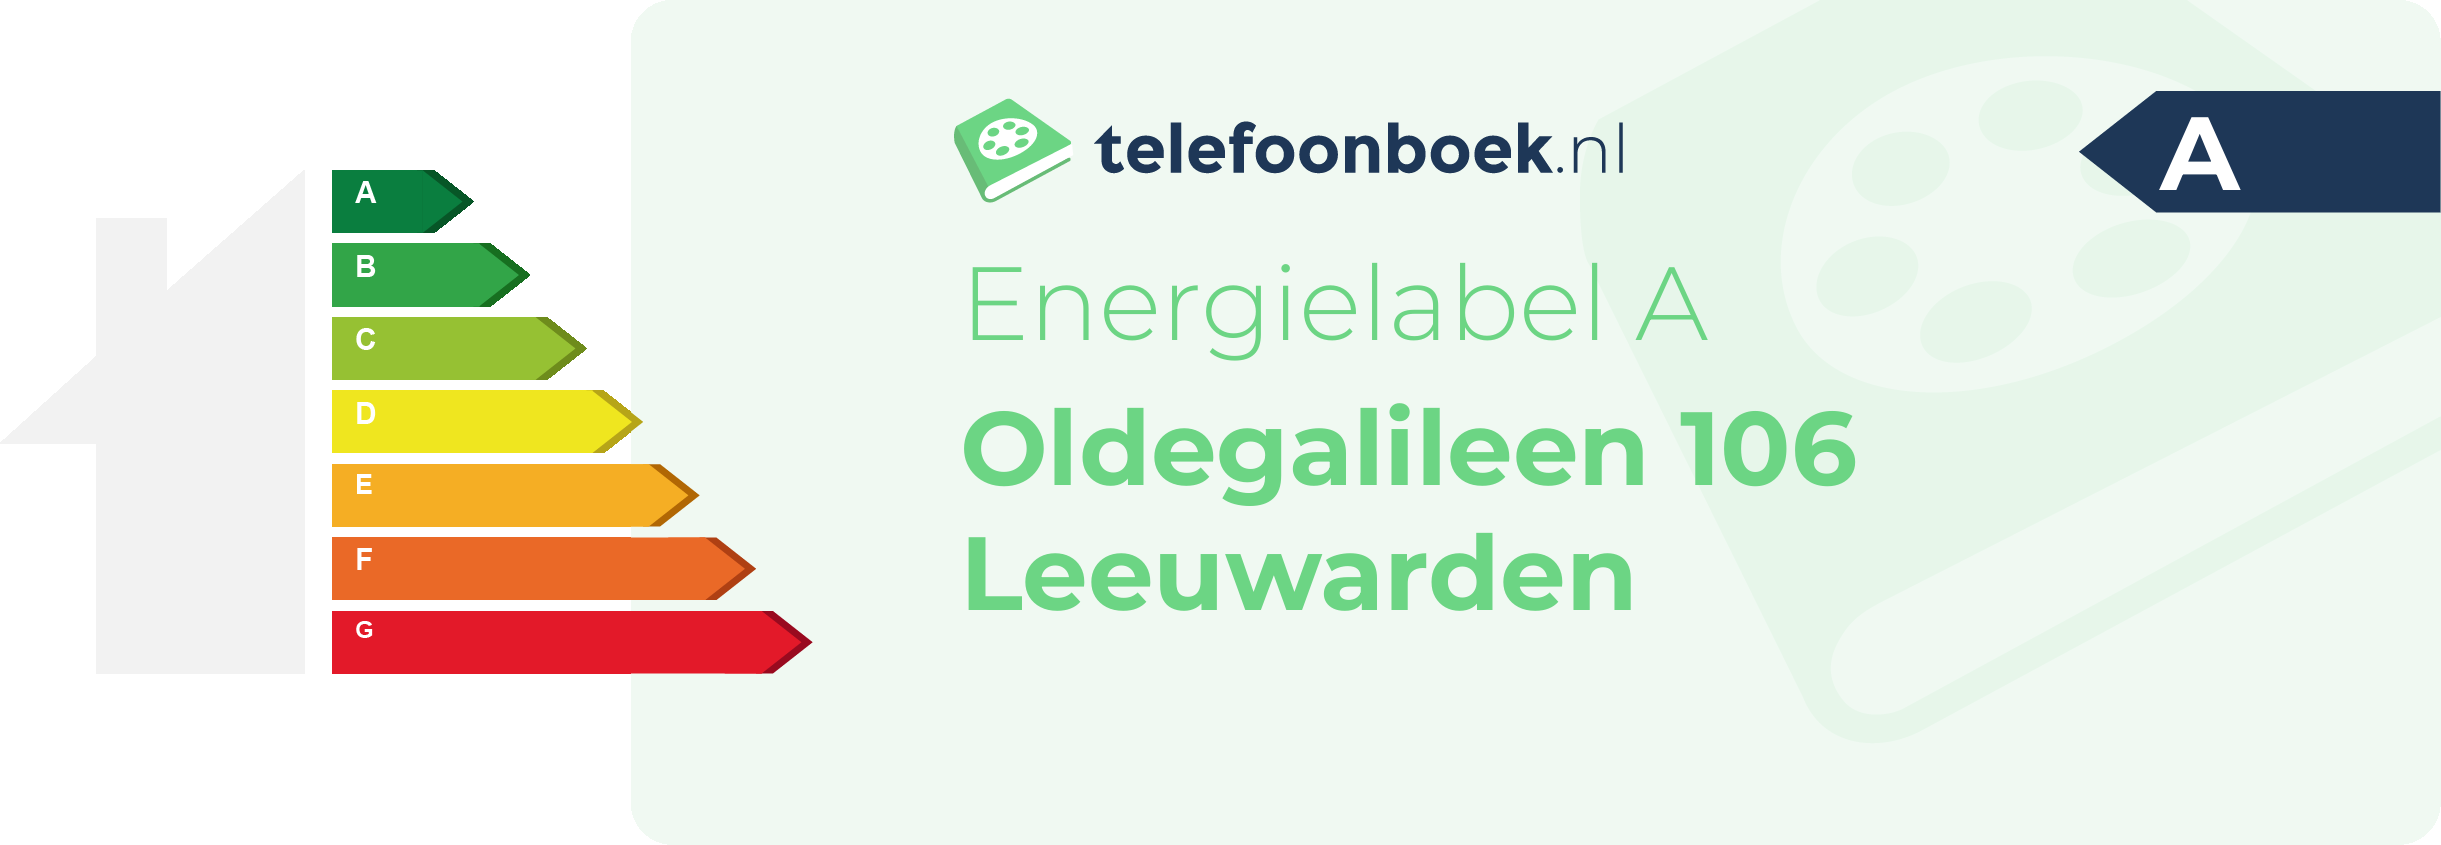 Energielabel Oldegalileen 106 Leeuwarden